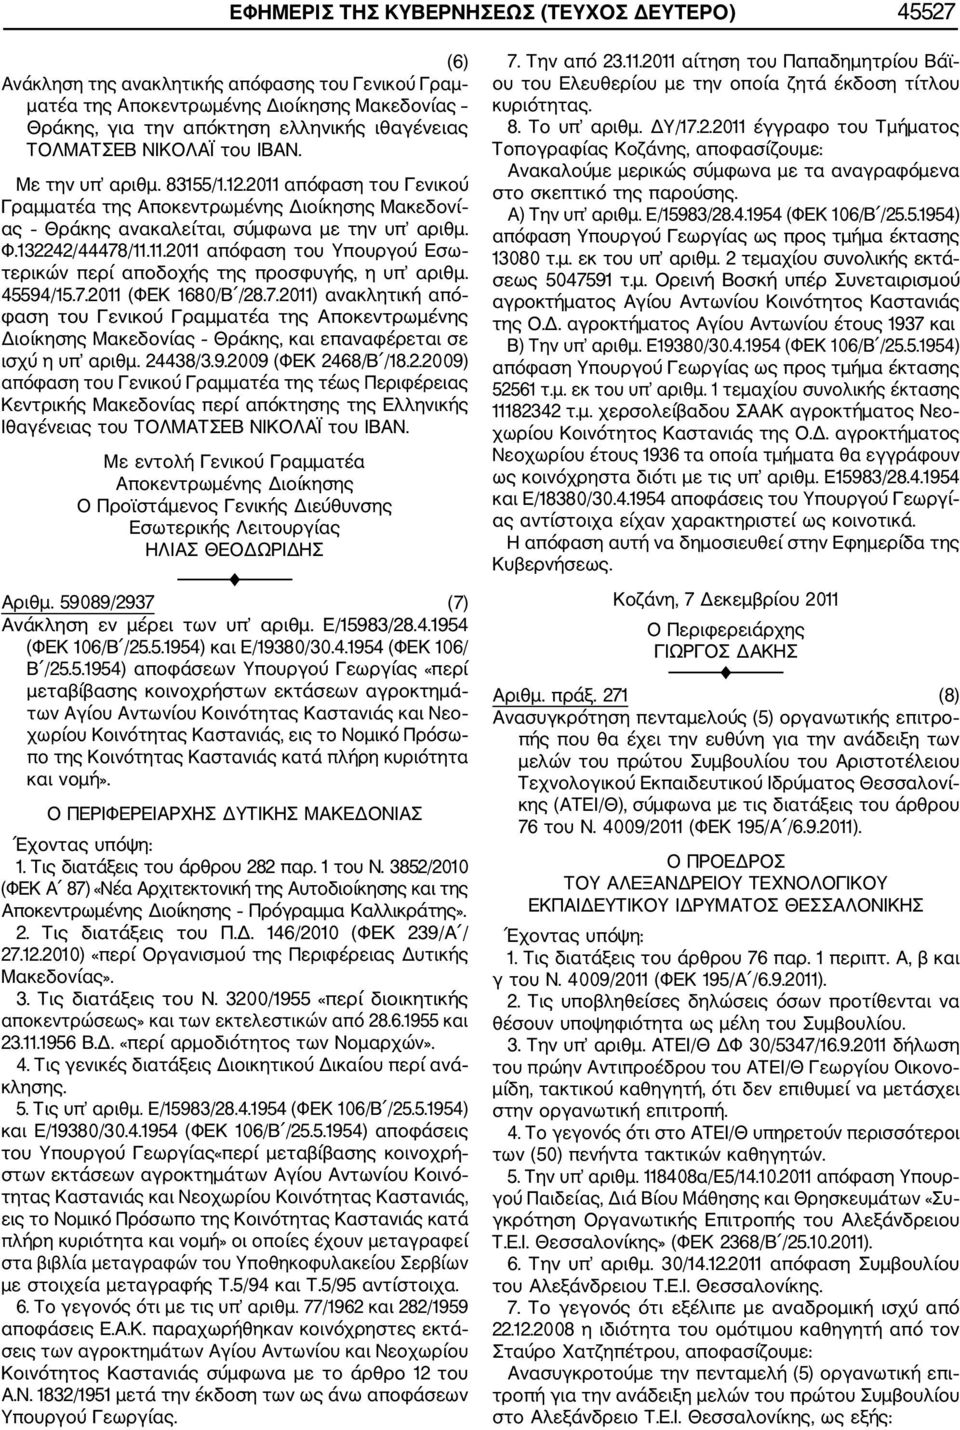 45594/15.7.2011 (ΦΕΚ 1680/Β /28.7.2011) ανακλητική από φαση του Γενικού Γραμματέα της Αποκεντρωμένης Διοίκησης Μακεδονίας Θράκης, και επαναφέρεται σε ισχύ η υπ αριθμ. 24438/3.9.2009 (ΦΕΚ 2468/Β /18.2.2009) απόφαση του Γενικού Γραμματέα της τέως Περιφέρειας Κεντρικής Μακεδονίας περί απόκτησης της Ελληνικής Ιθαγένειας του ΤΟΛΜΑΤΣΕΒ ΝΙΚΟΛΑΪ του ΙΒΑΝ.